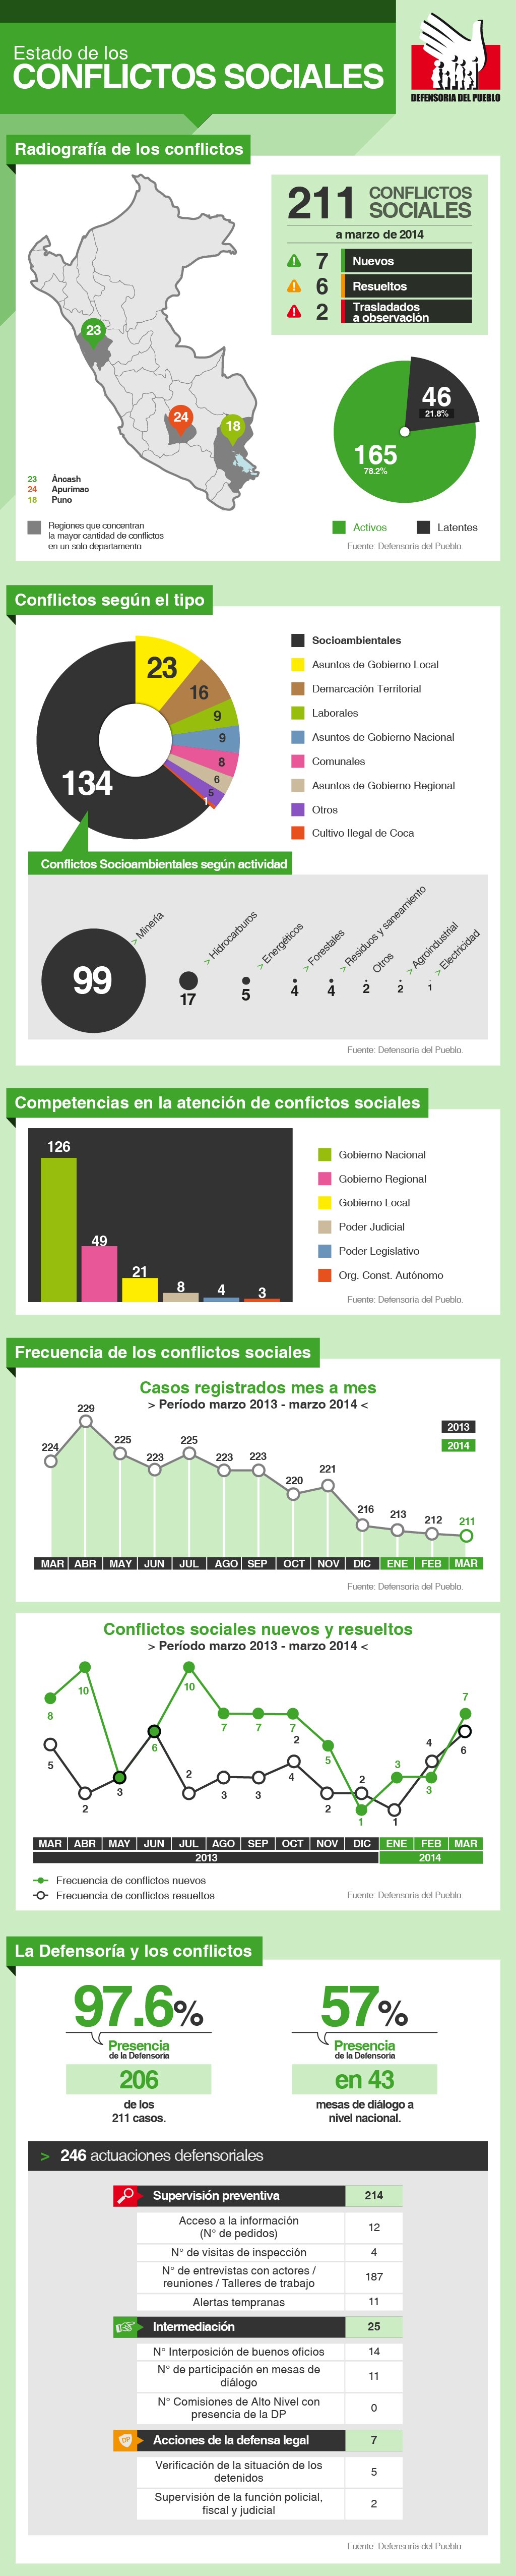 infografía_conflictos sociales_defensoría_spda